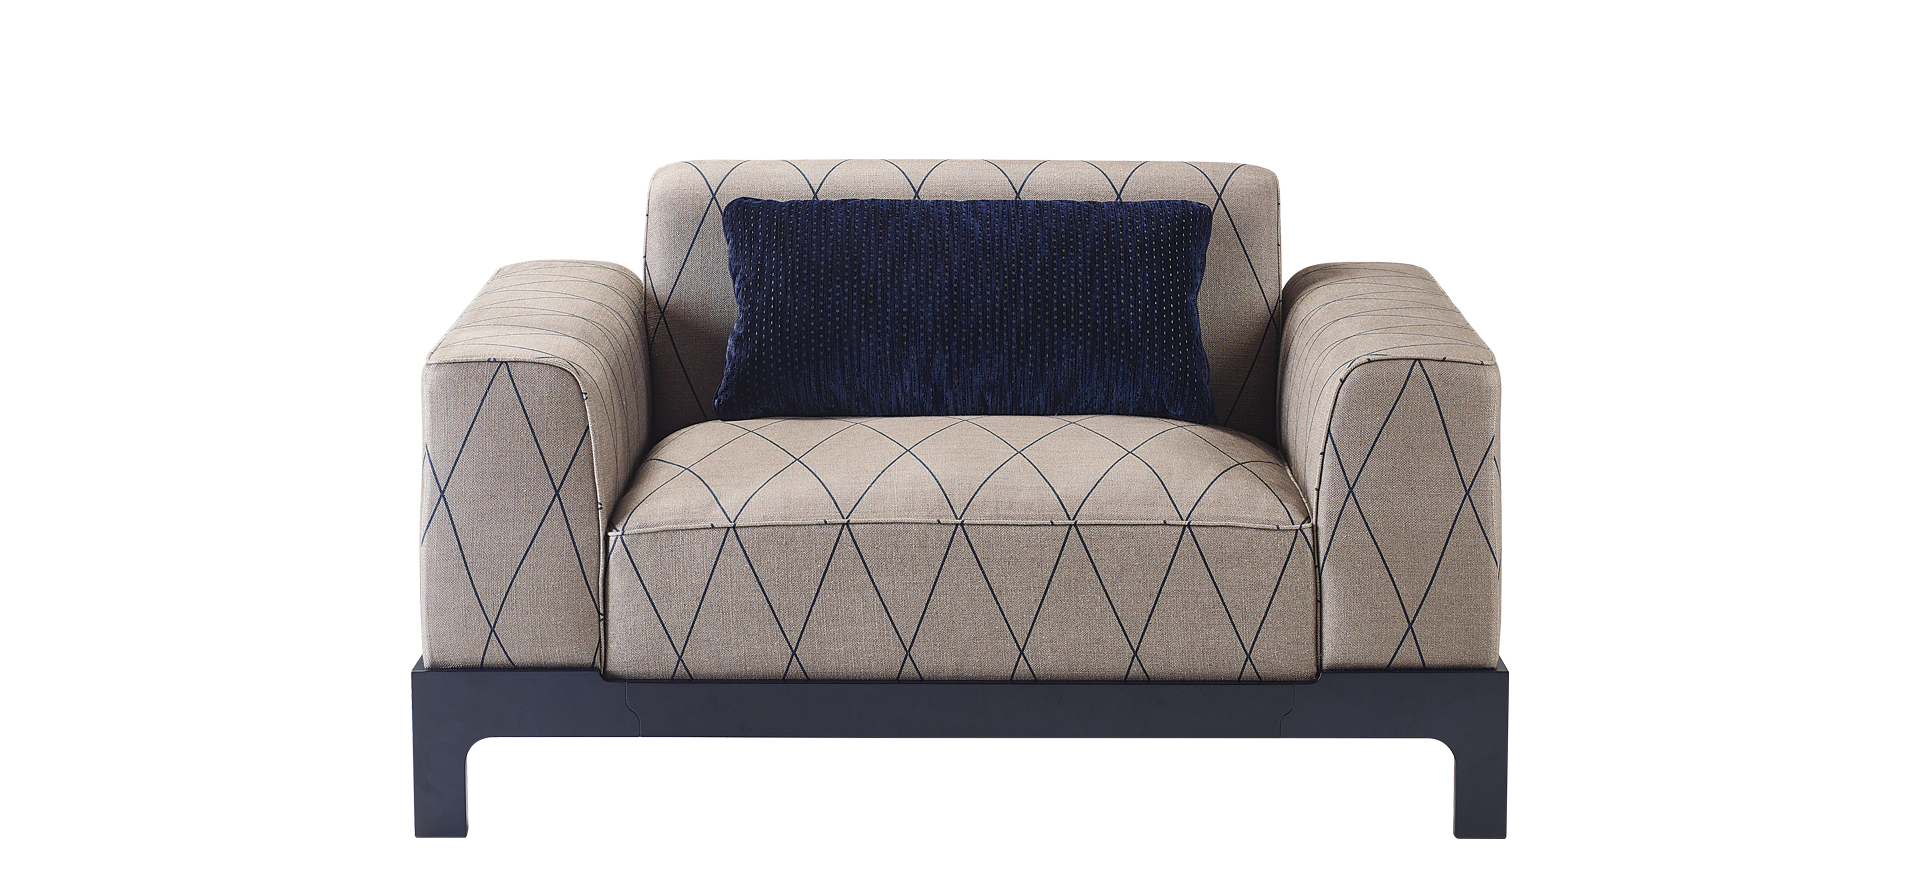 Pullman è un divano in legno con rivestimento e cuscini in tessuto, della collezione Indigo Tales di Promemoria | Promemoria